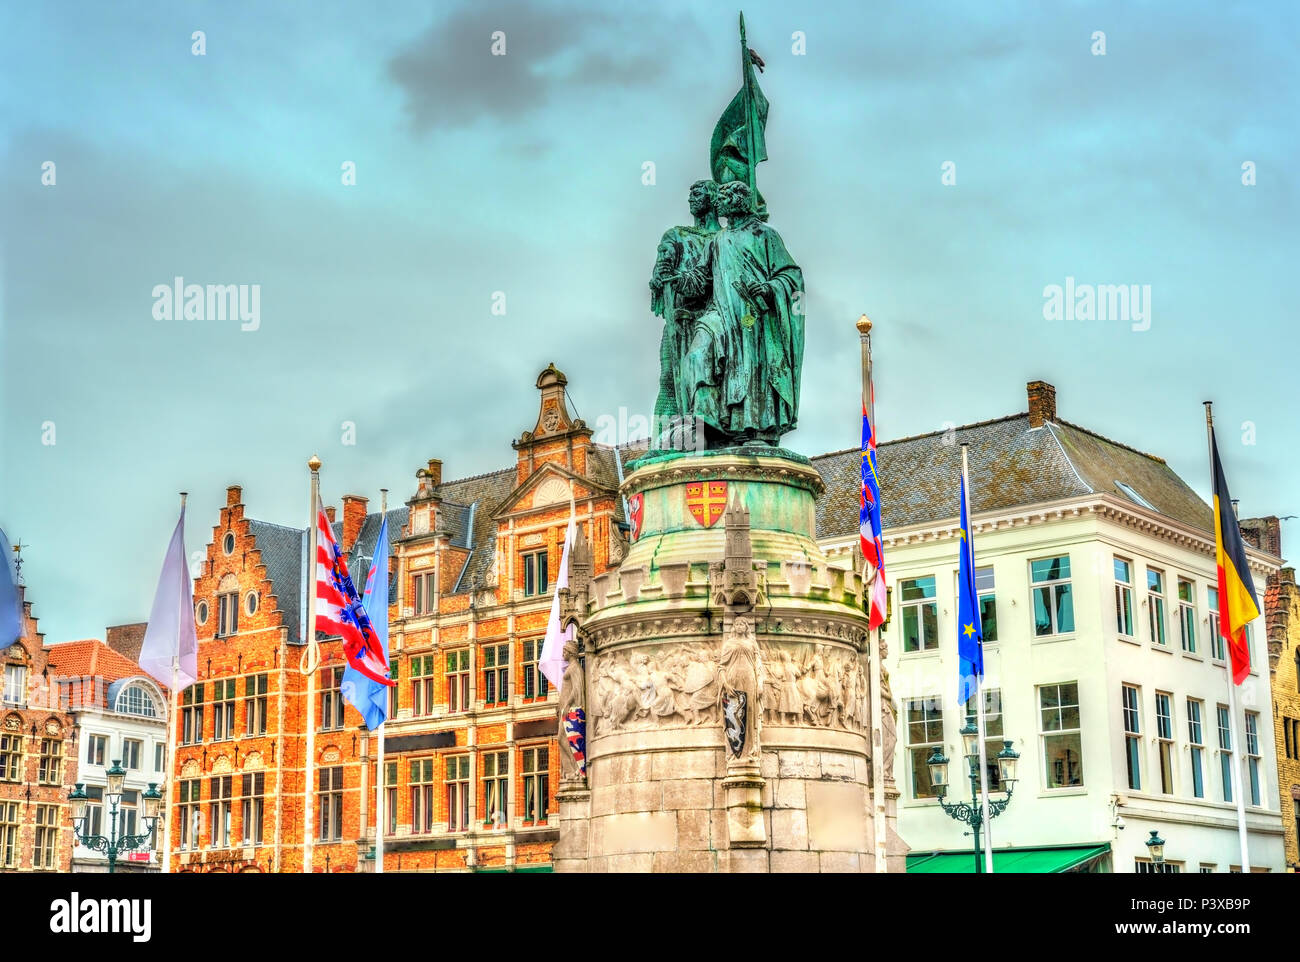 Statue of Jan Breydel and Pieter de Coninck in Bruges, Belgium Stock Photo